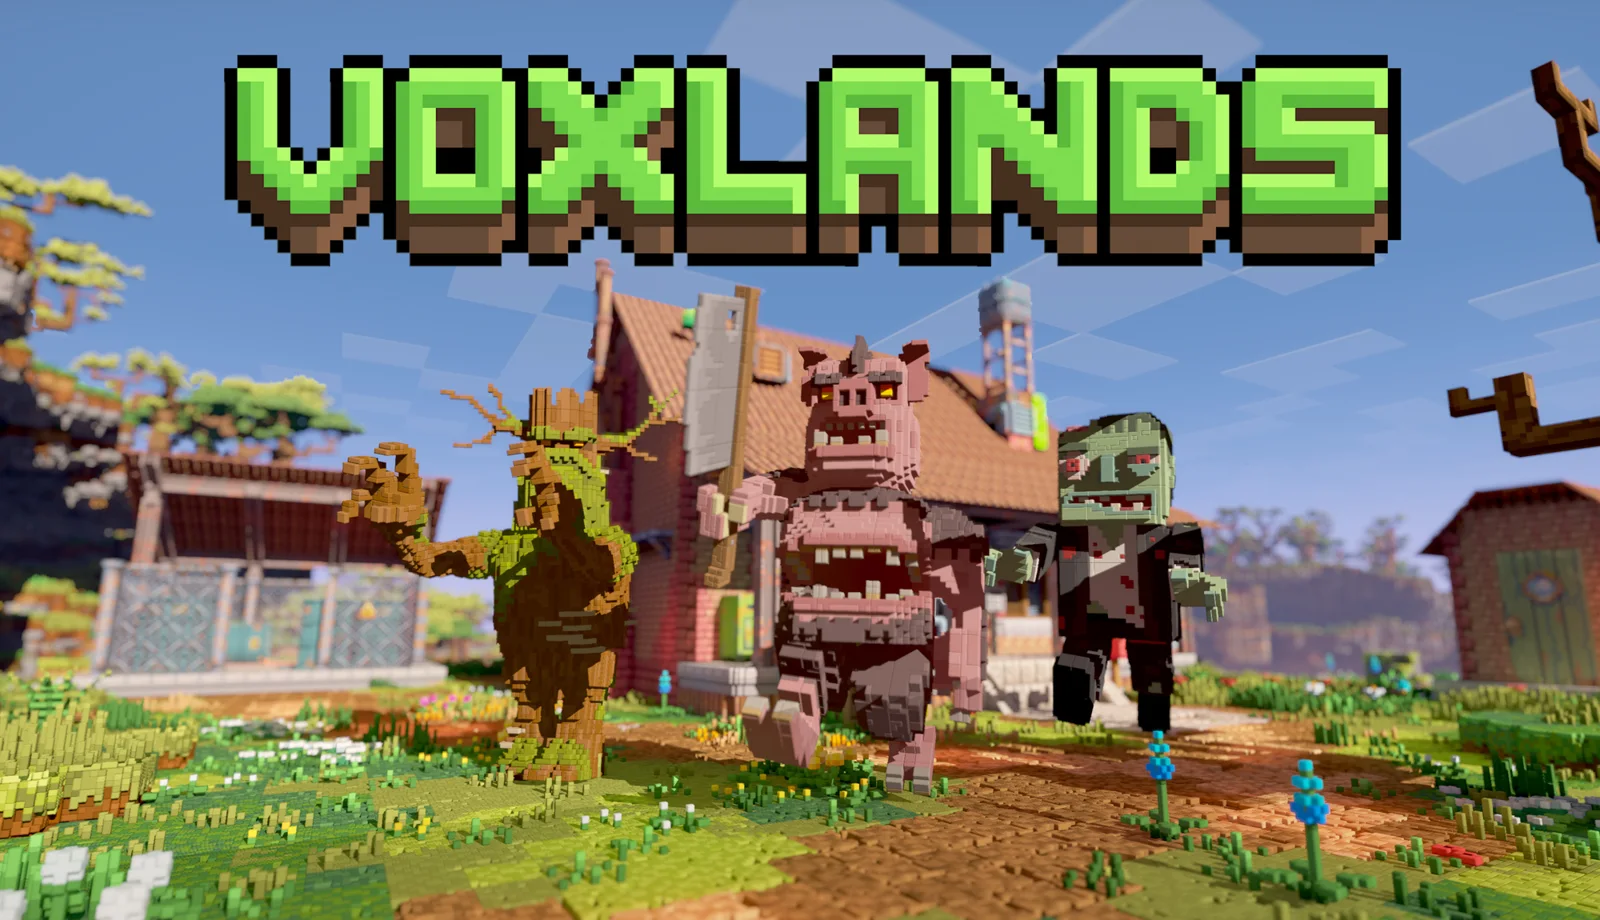 Voxlands